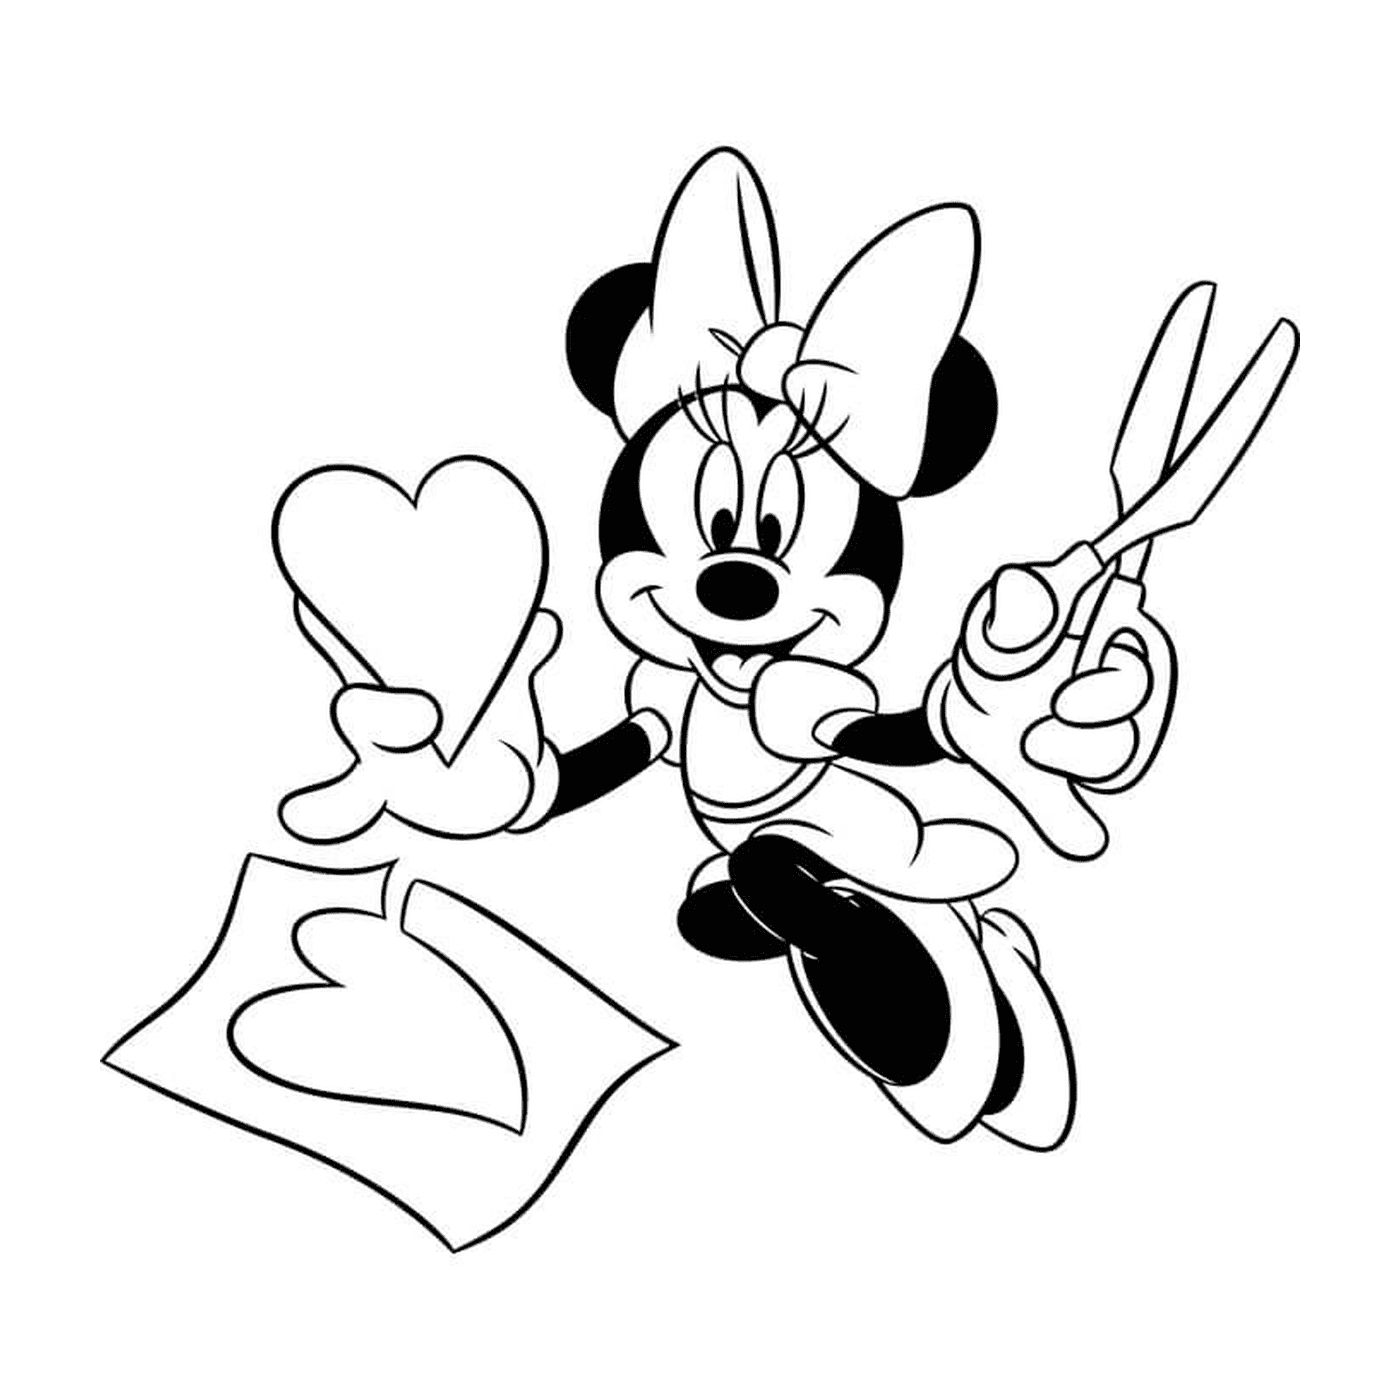   Minnie découpe un cœur bricolage 